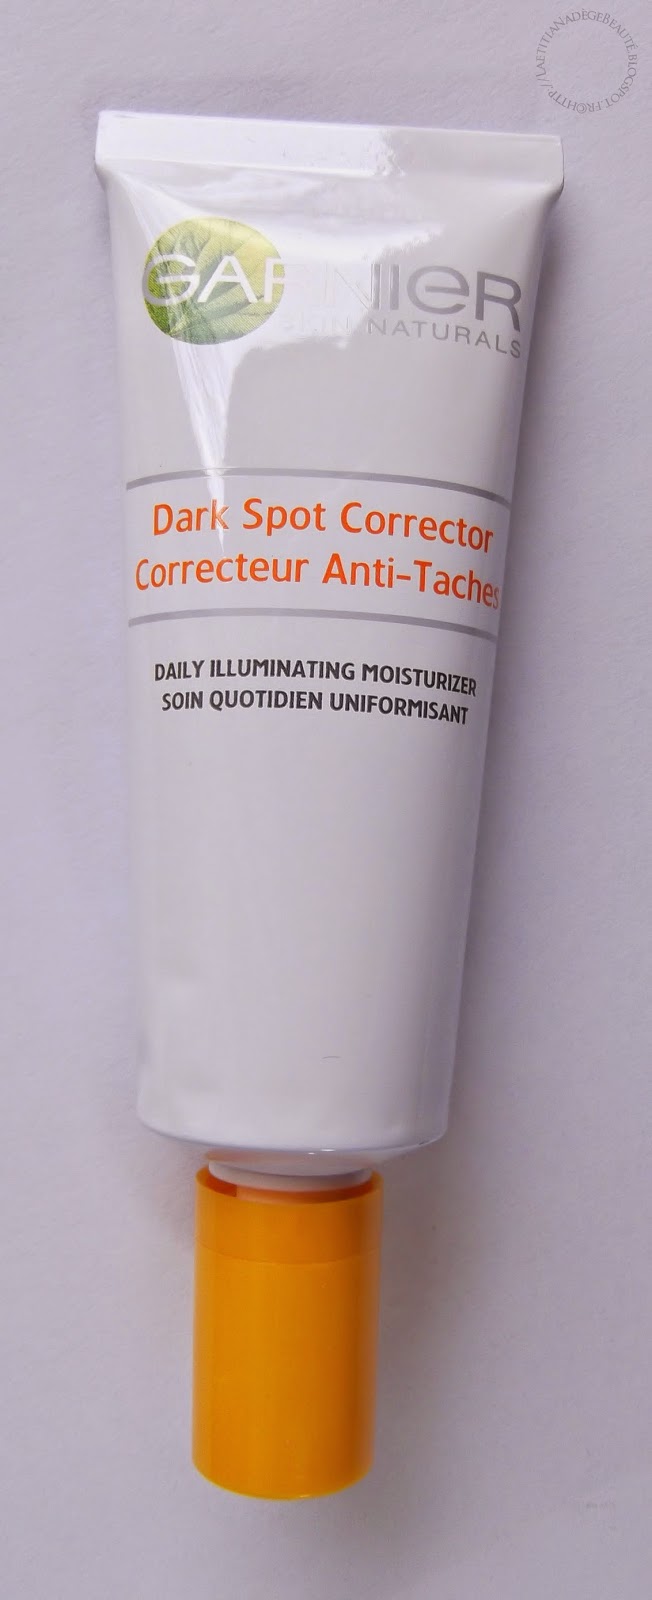  GARNIER  Dark Spot Corrector,Correcteur Anti-Taches